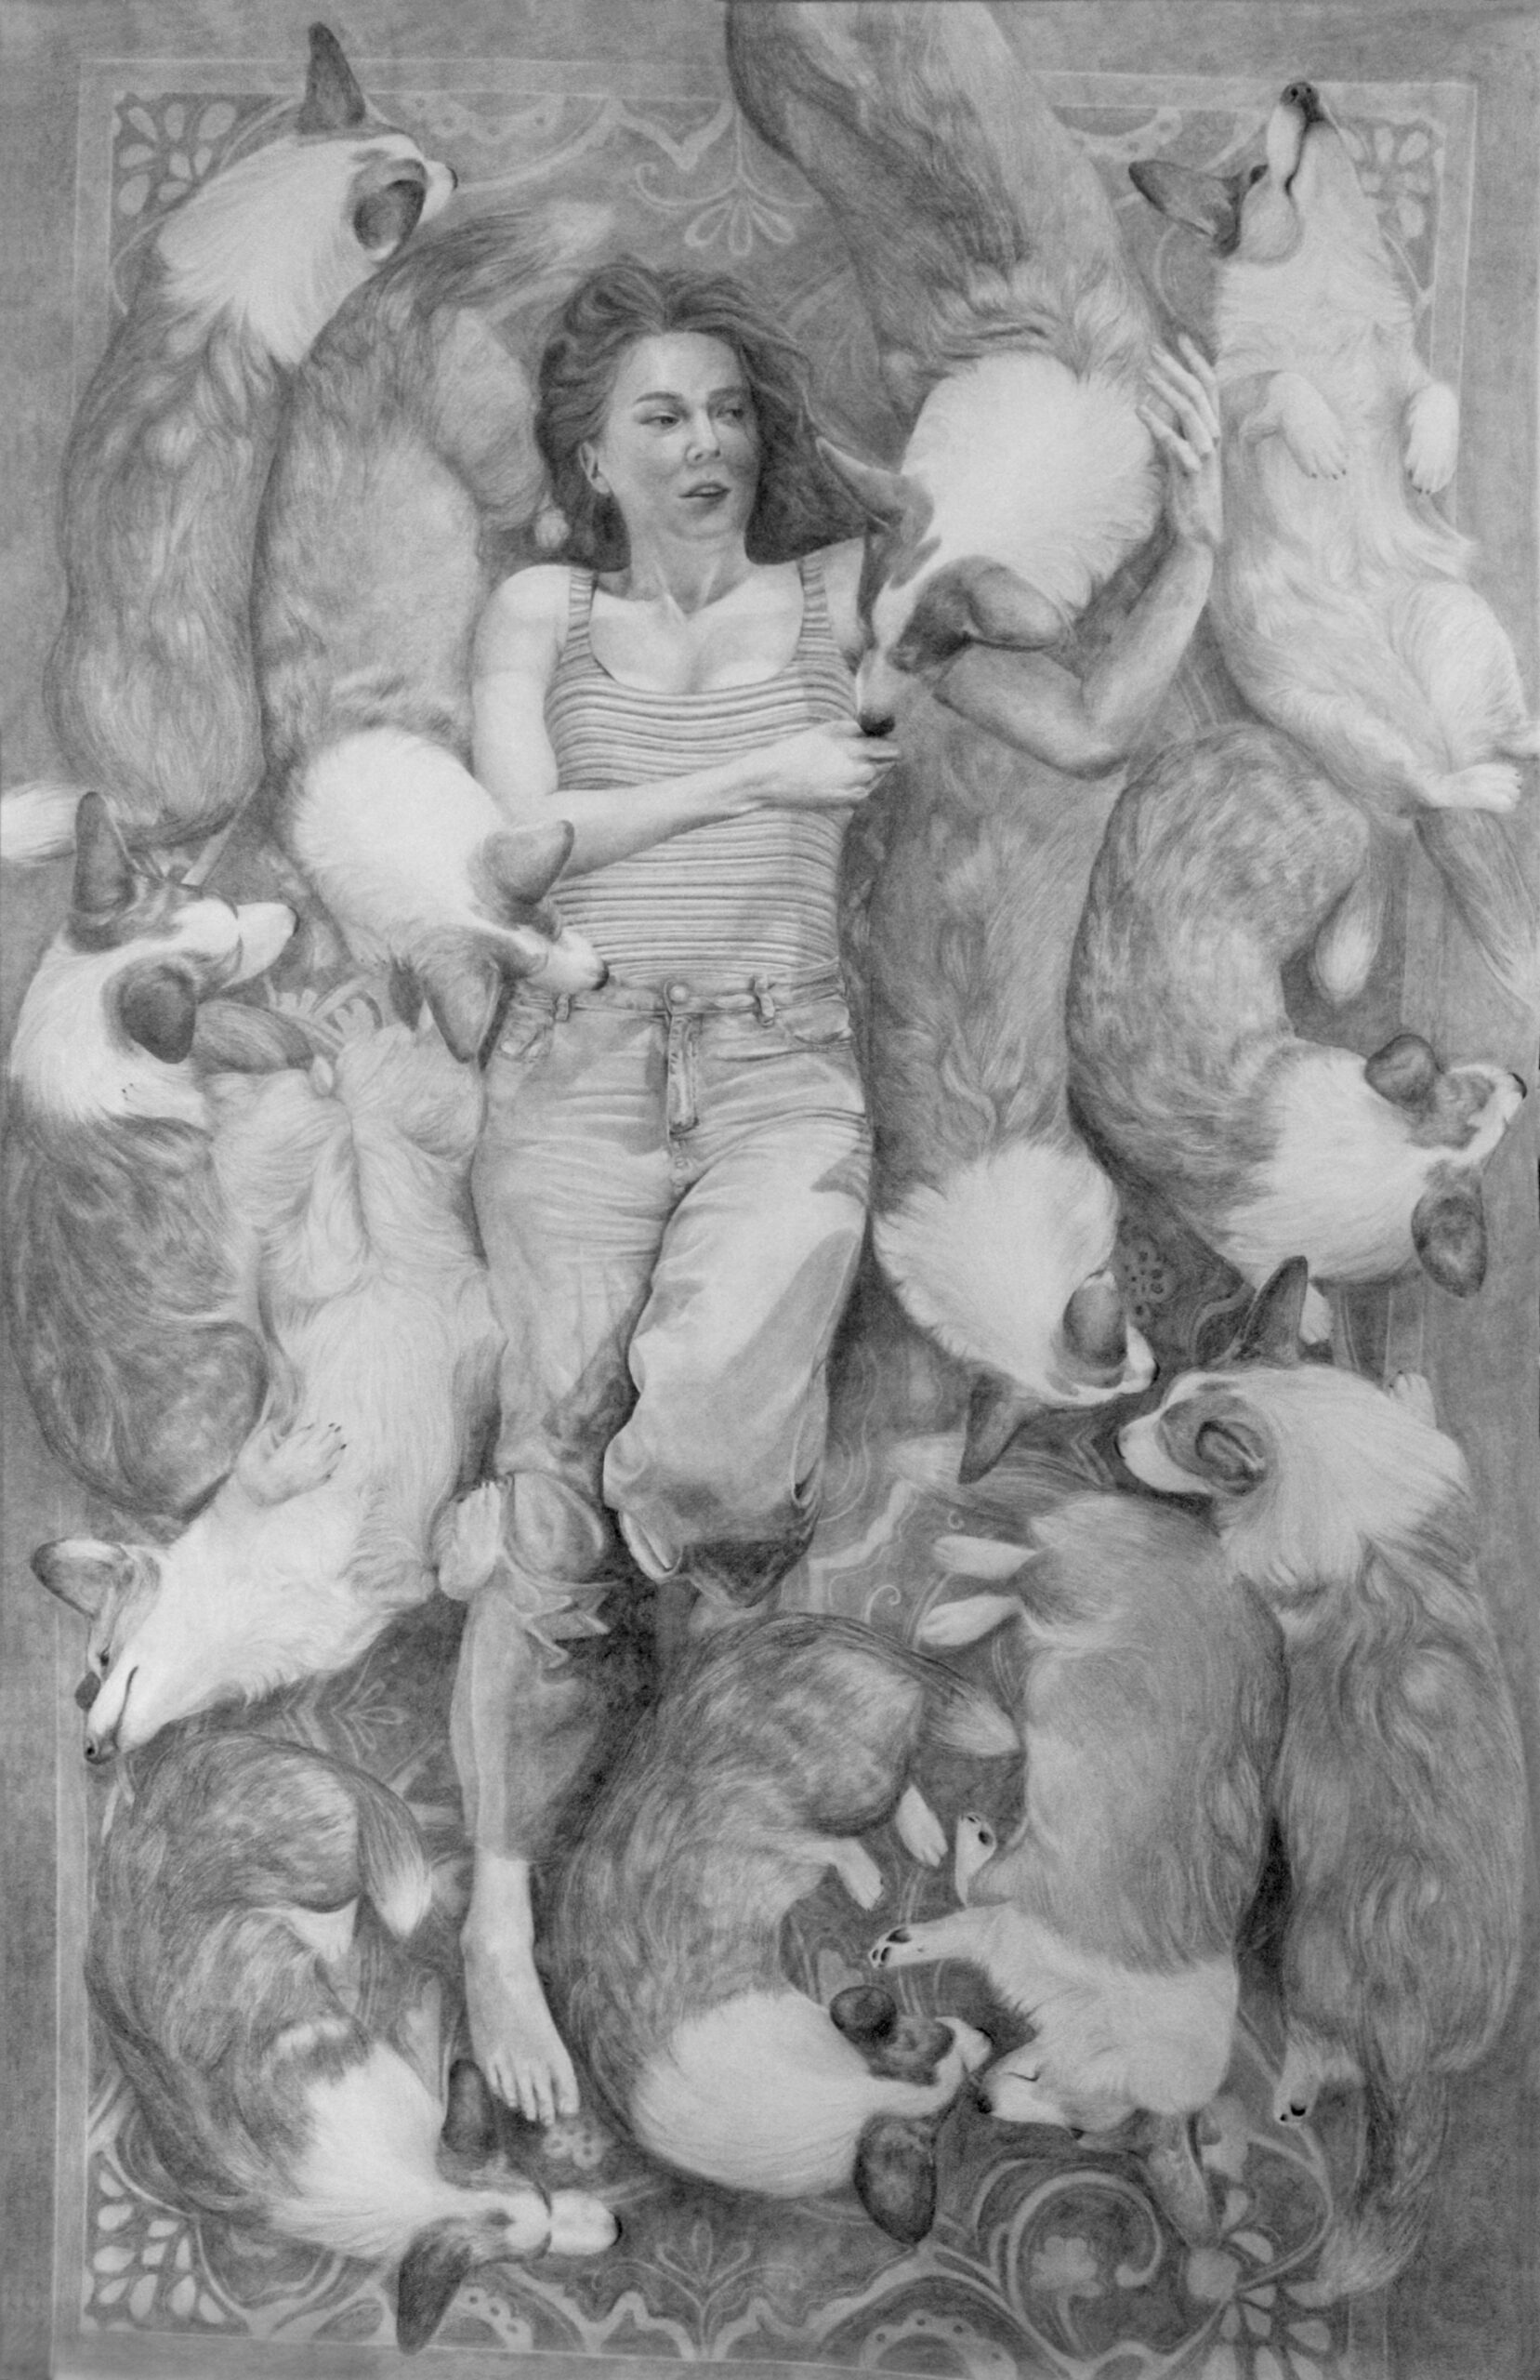 Hiperrealistycznie ukazana z góry dziewczyna leżąca na wzorzystym dywanie wśród gromady psów.